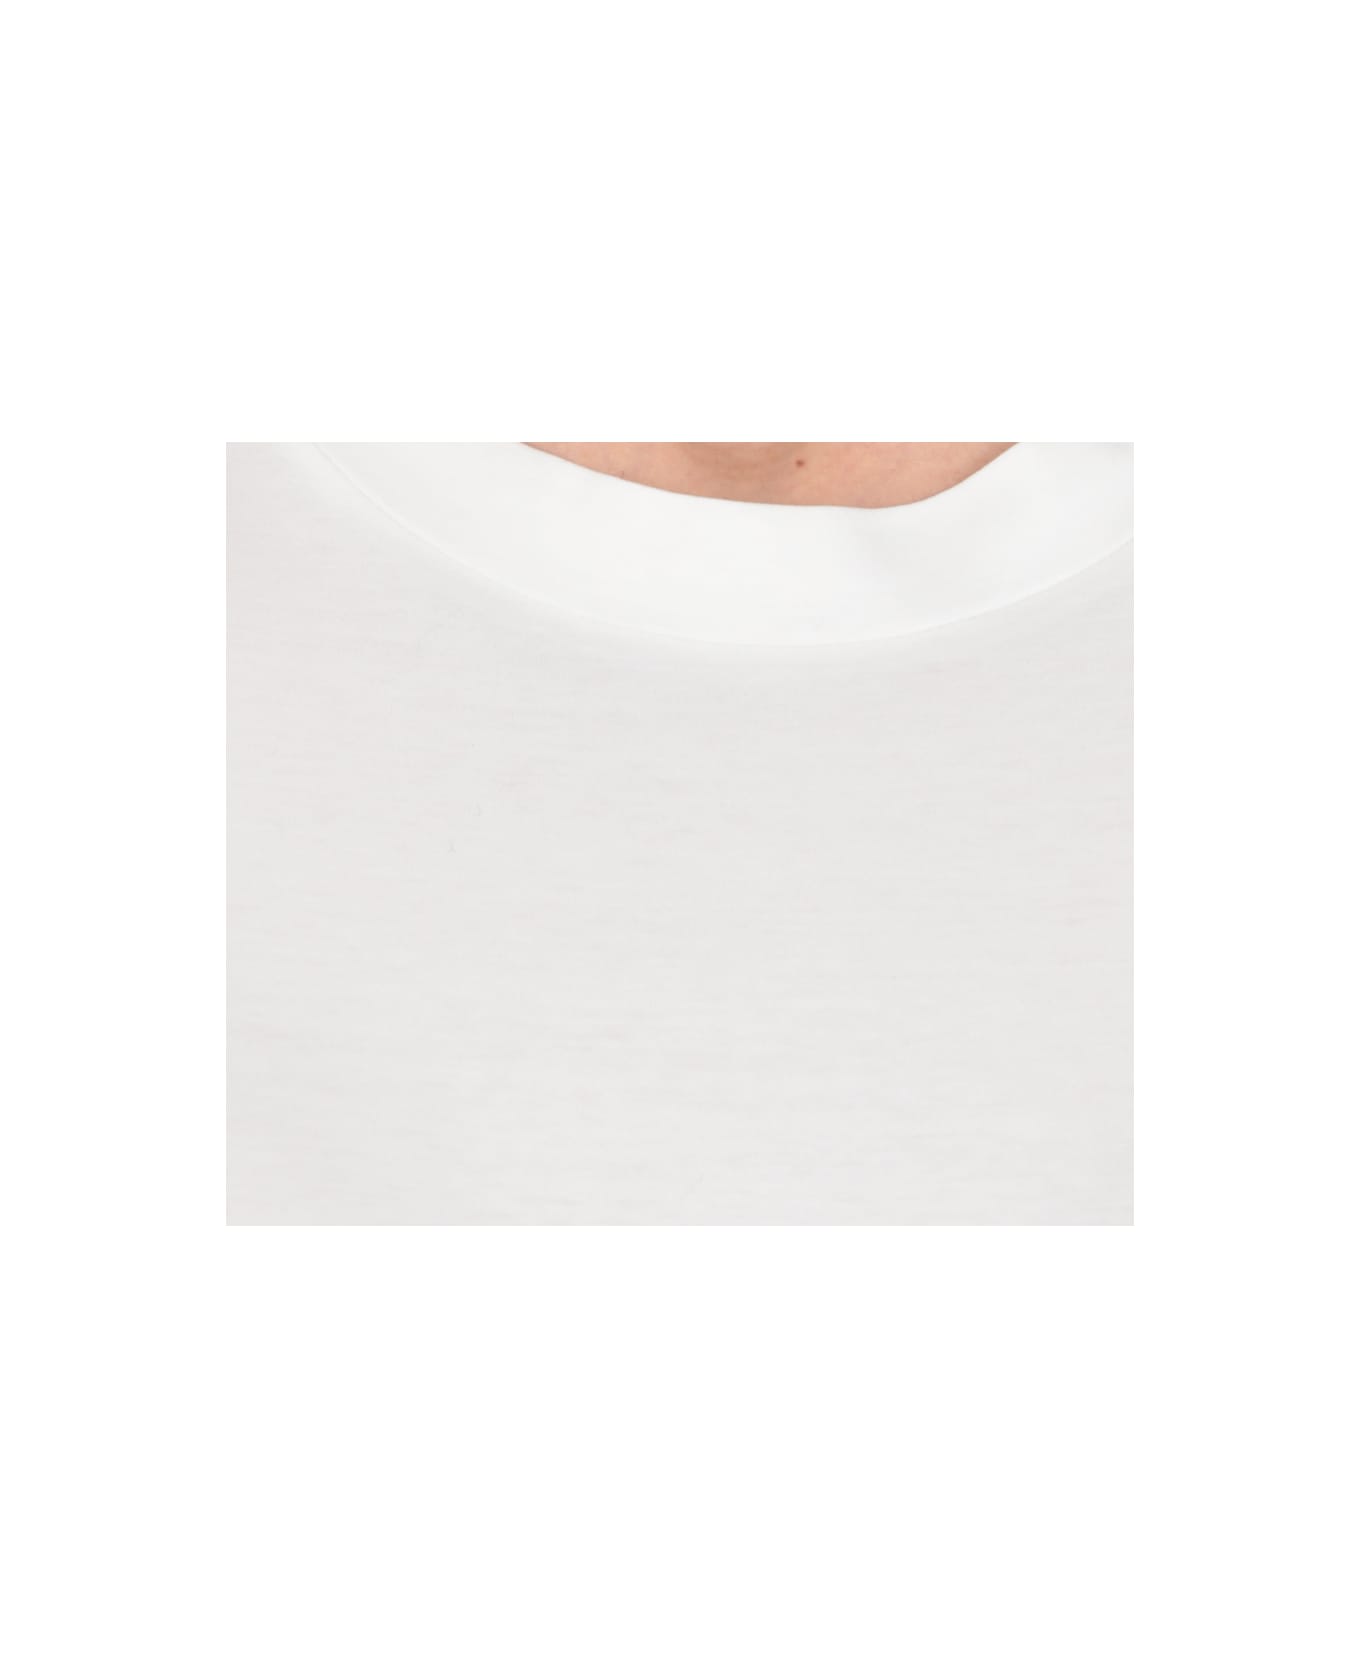 Jil Sander Cotton T-shirt - White